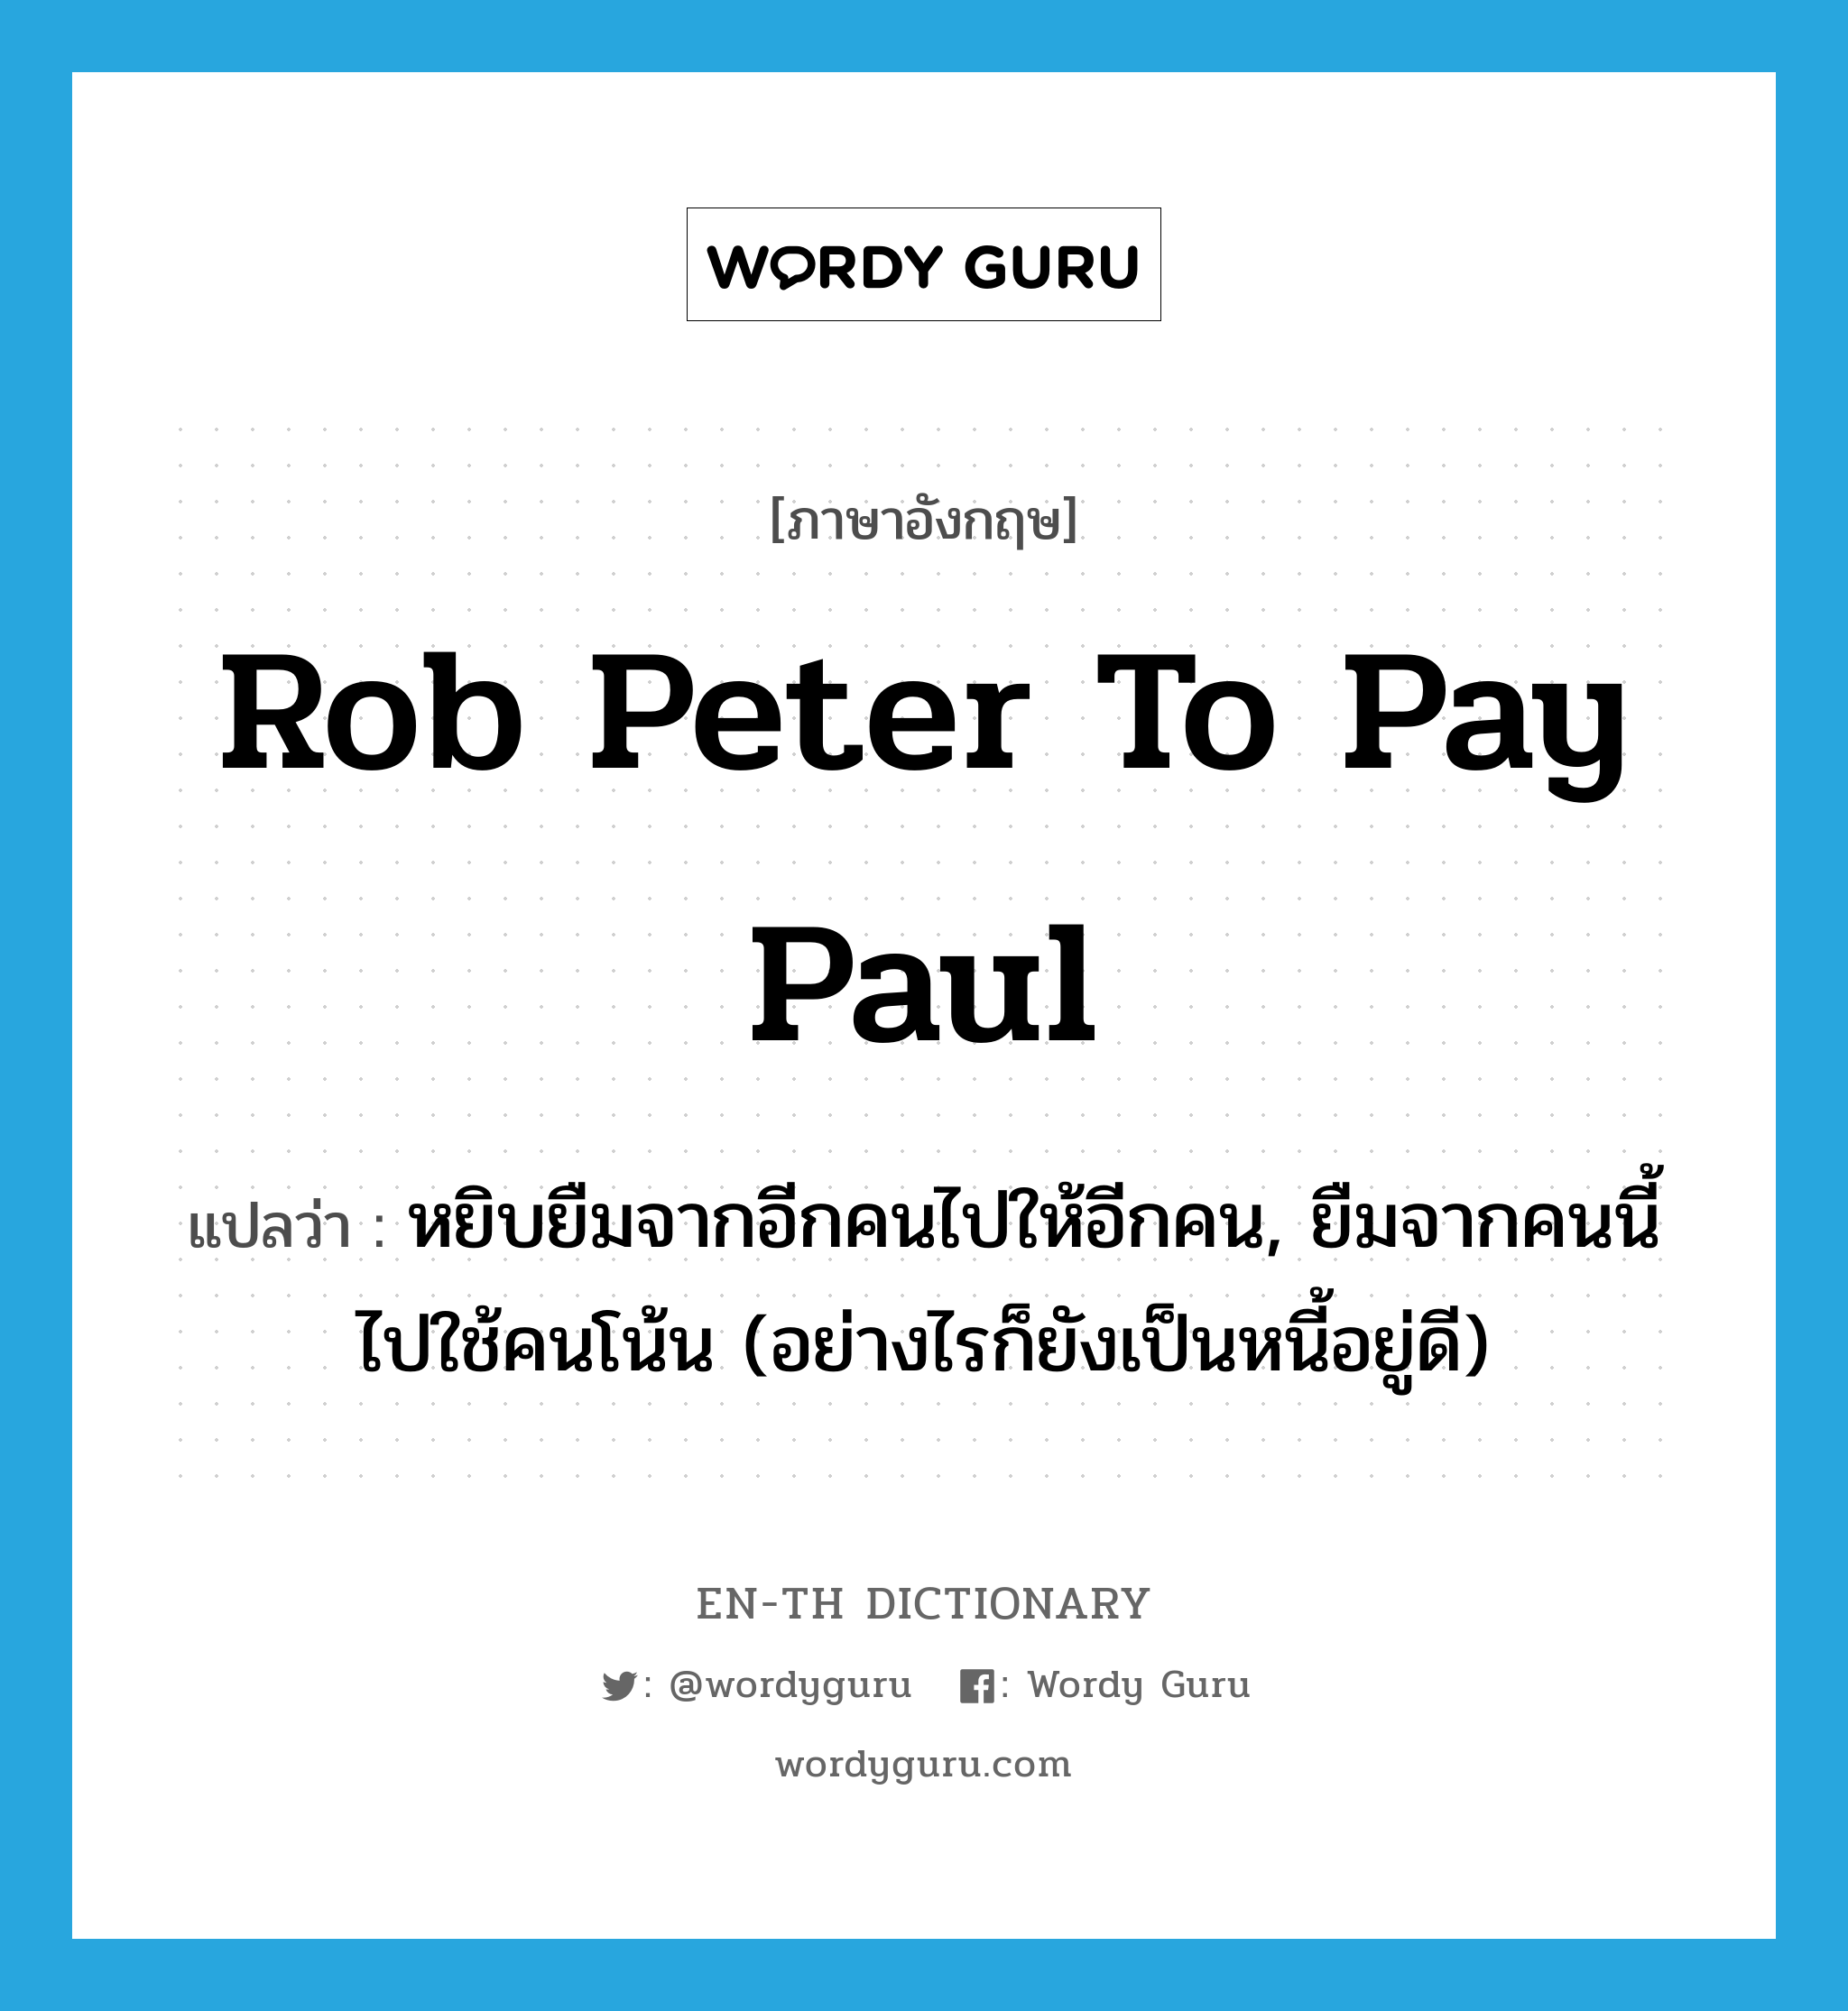 rob Peter to pay Paul แปลว่า?, คำศัพท์ภาษาอังกฤษ rob Peter to pay Paul แปลว่า หยิบยืมจากอีกคนไปให้อีกคน, ยืมจากคนนี้ไปใช้คนโน้น (อย่างไรก็ยังเป็นหนี้อยู่ดี) ประเภท IDM หมวด IDM